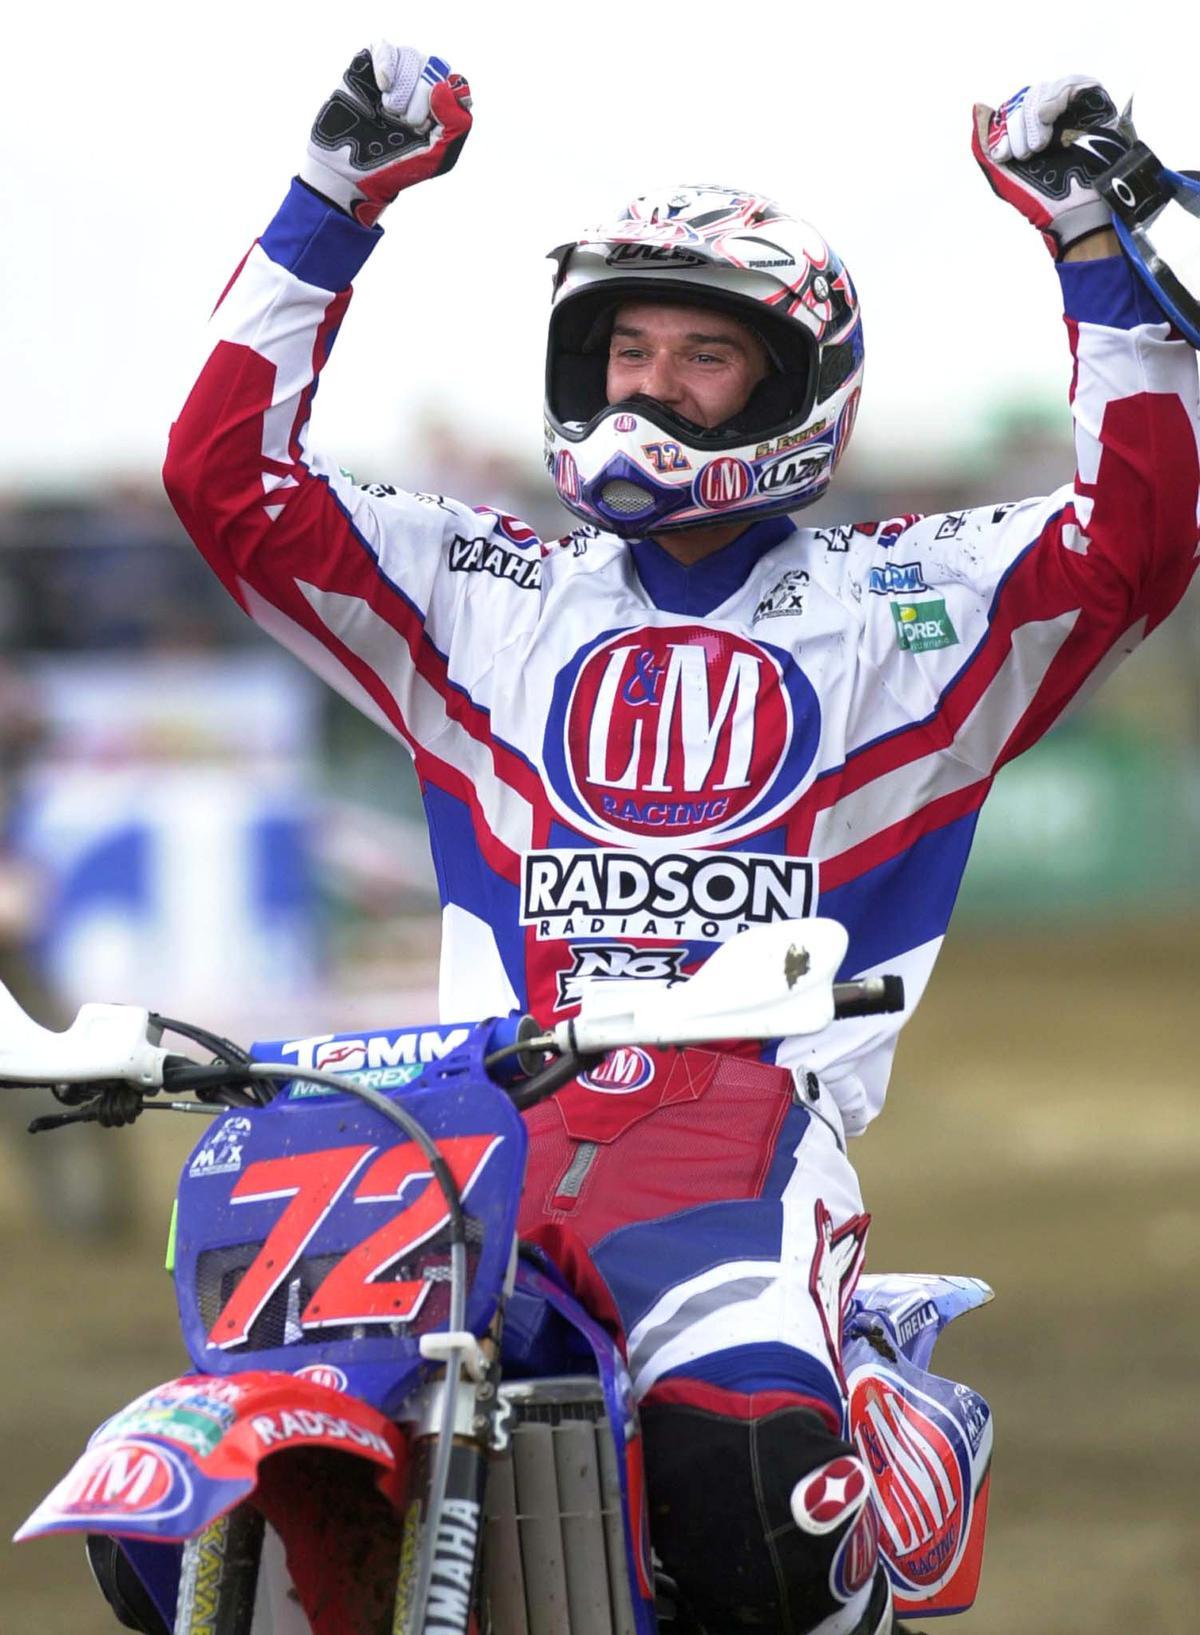 In 2001 domineerde Stefan Everts de motorsport: hij werd wereldkampioen en pakte de ene overwinning na de andere, zoals hier in Namen. (foto Belga)©BENOIT DOPPAGNE BELGA